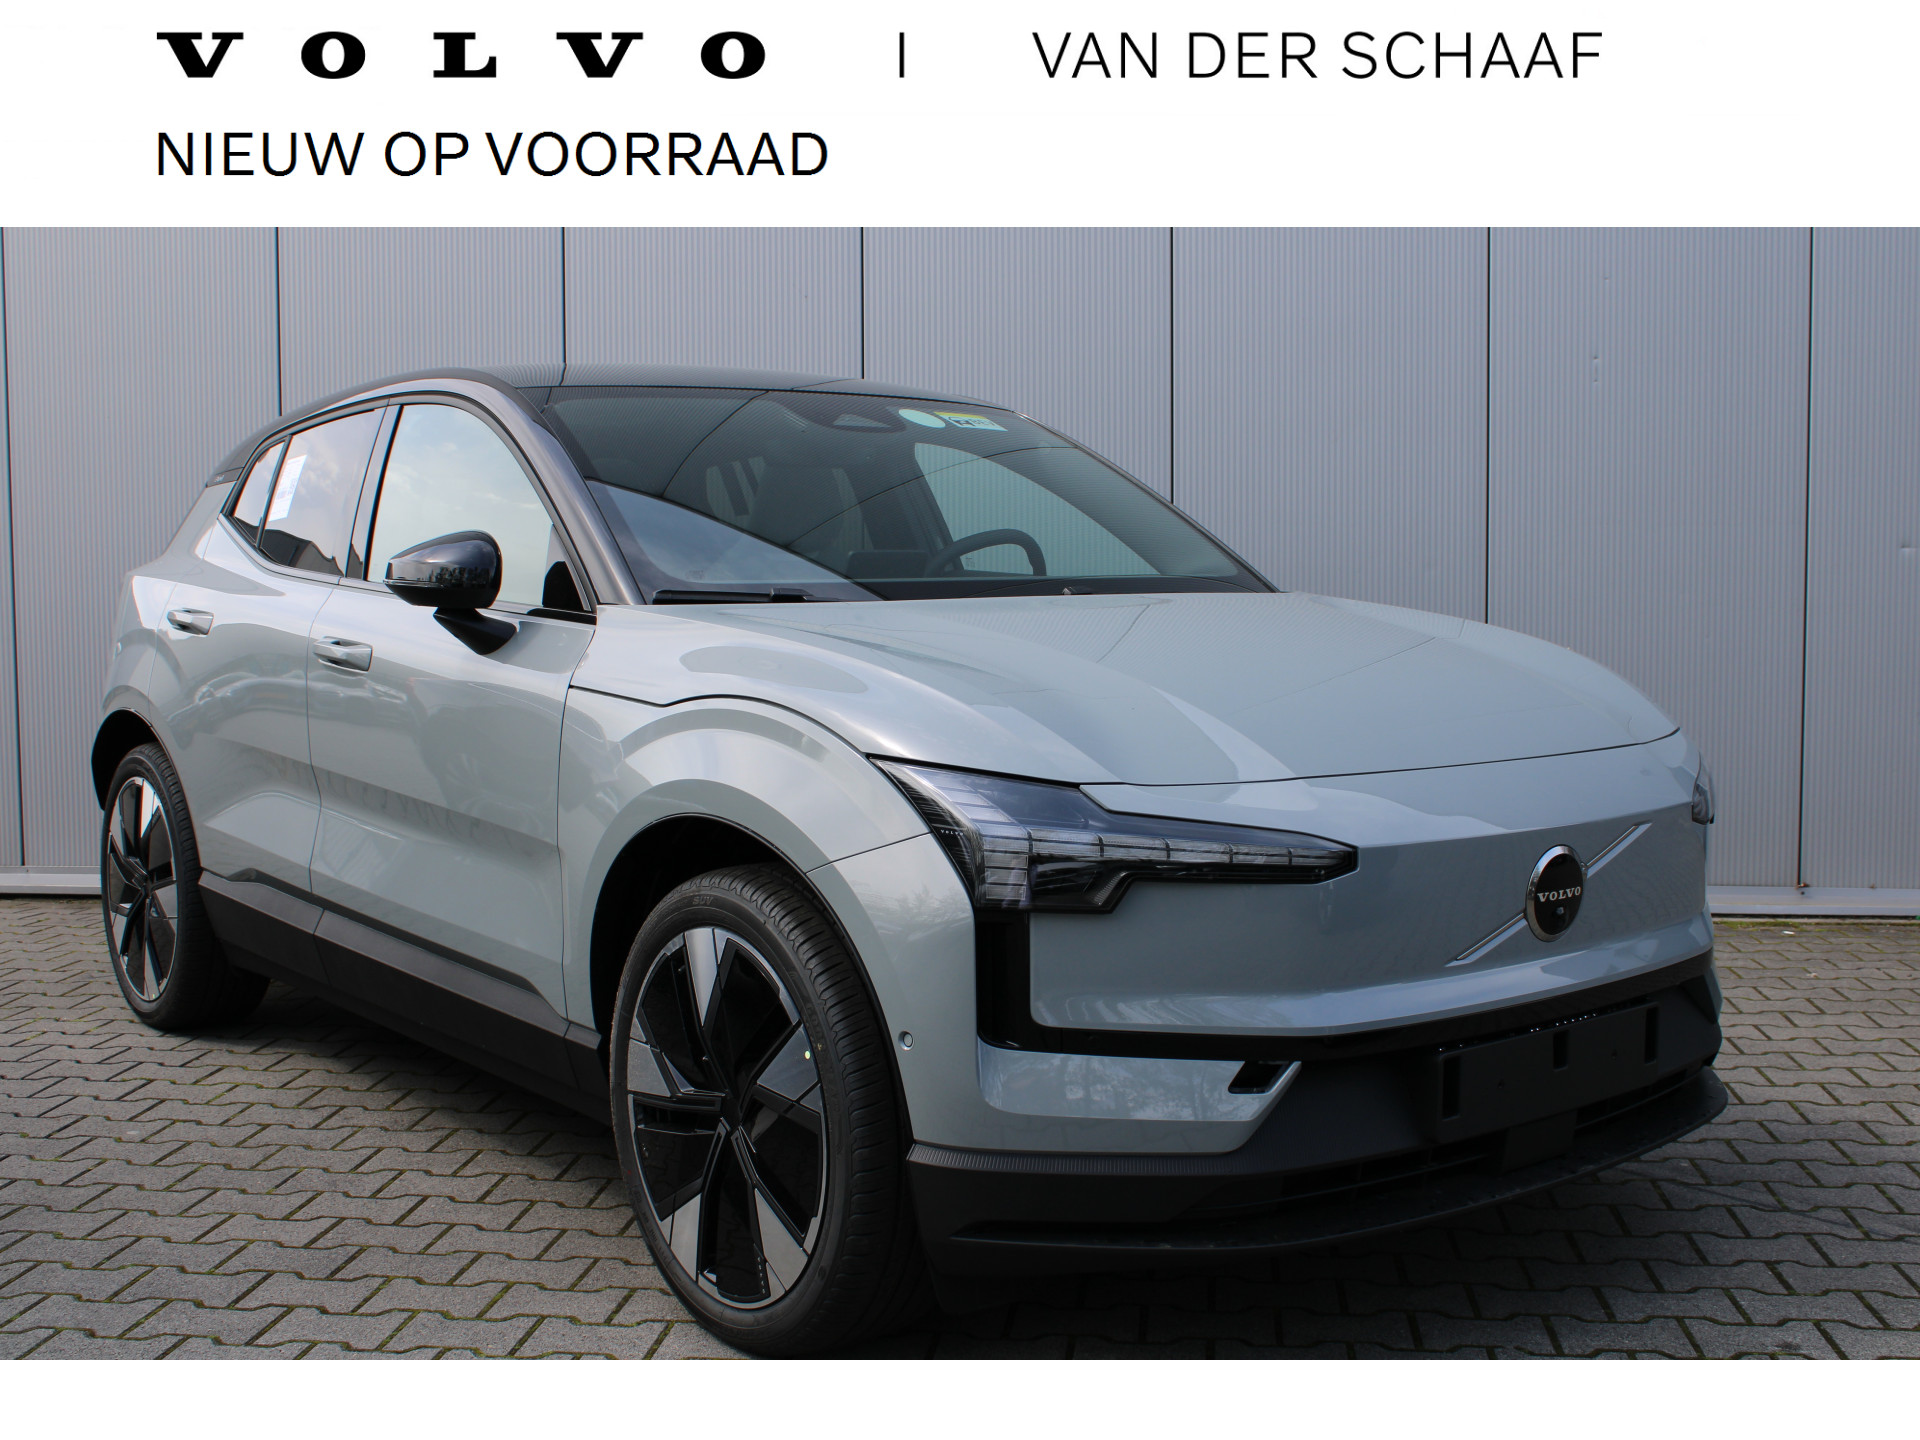 Volvo EX30 Extended Range Plus 69 kWh | Pine Interieur | komt in aanmerking voor € 2950,- subsidie | Stoel verwarming | direct leverbaar